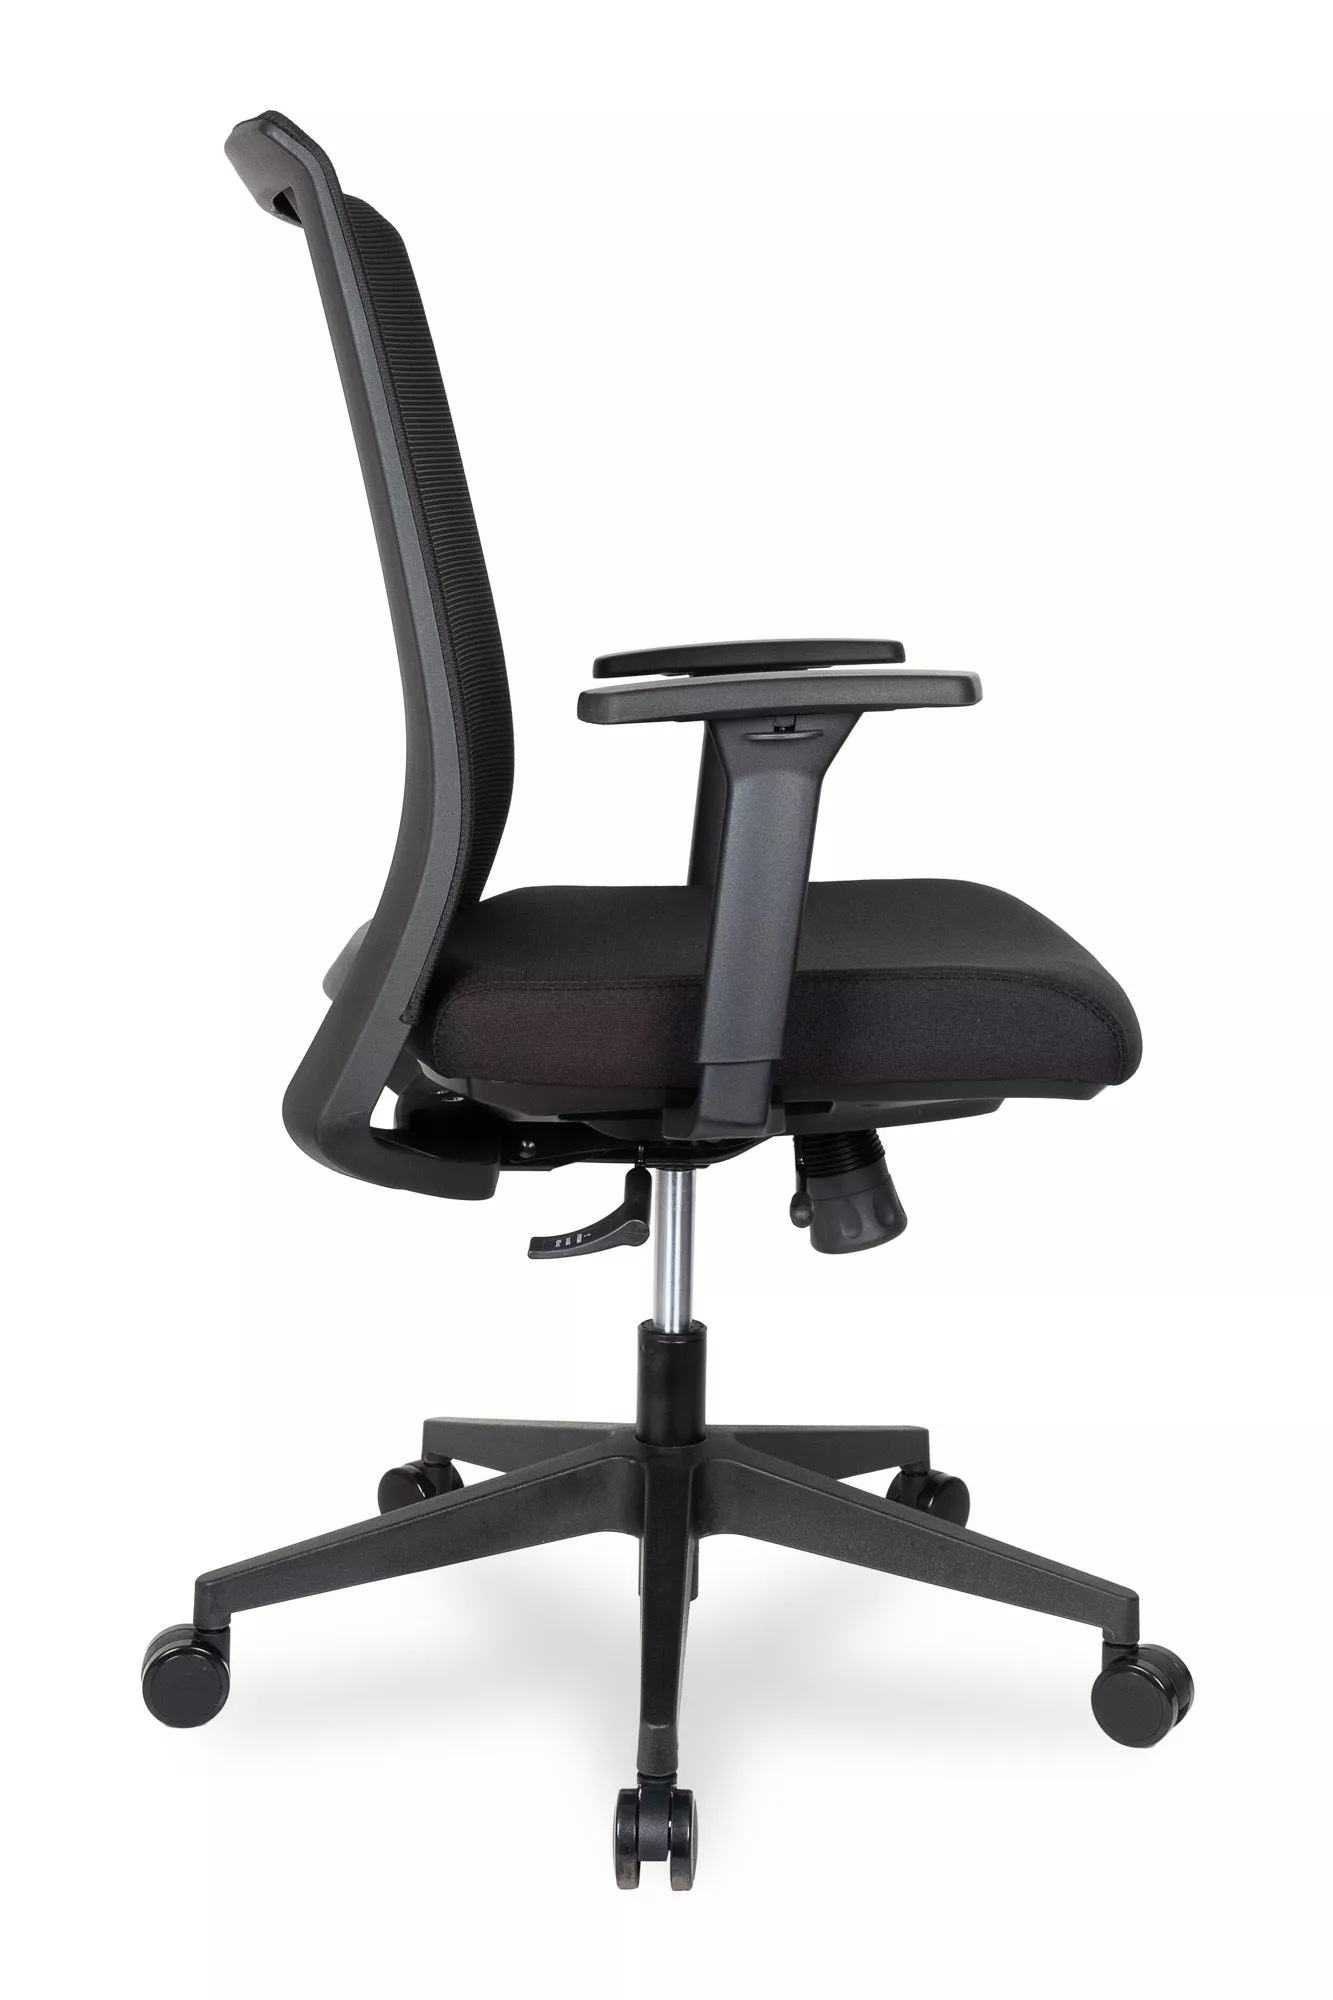 Компьютерное кресло College CLG-429 MBN-B Черный